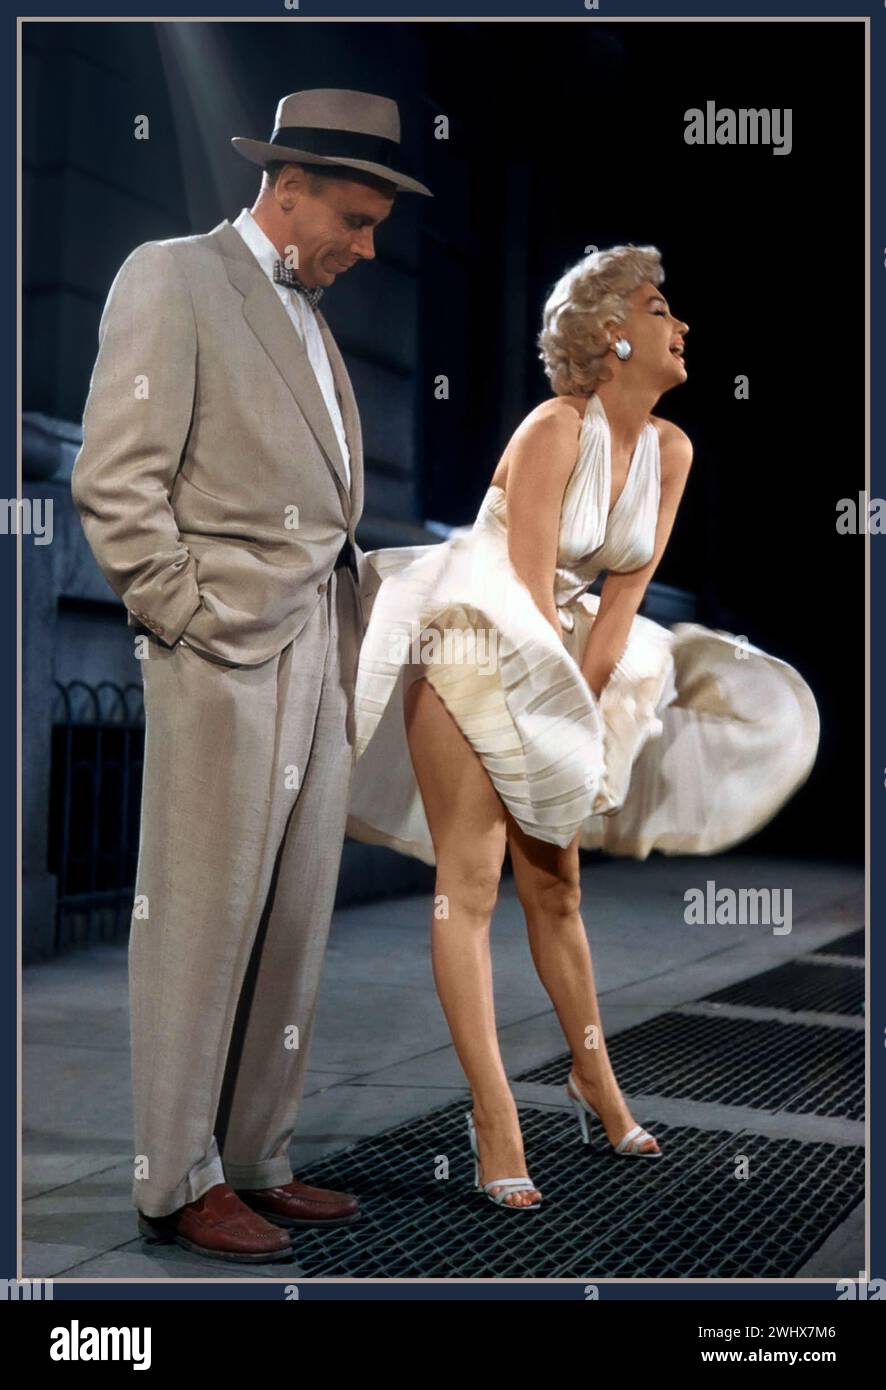 Das Sieben-Jahr-Jucken. Marilyn Monroe und Tom Ewell drehen 1955 in einer amerikanischen Romantik-Komödie von Billy Wilder, die er zusammen mit George Axelrod aus dem Dreiaktspiel 1952 schrieb. Die Hauptrollen des Films waren Marilyn Monroe und Tom Ewell, der seine Bühnenrolle wieder aufnahm. Es enthält eines der bekanntesten Popkultur-Bilder des 20. Jahrhunderts – Monroe steht auf einem U-Bahn-Gitter, während ihr weißes Kleid von einem vorbeifahrenden Zug nach oben geblasen wird. Hollywood USA Stockfoto